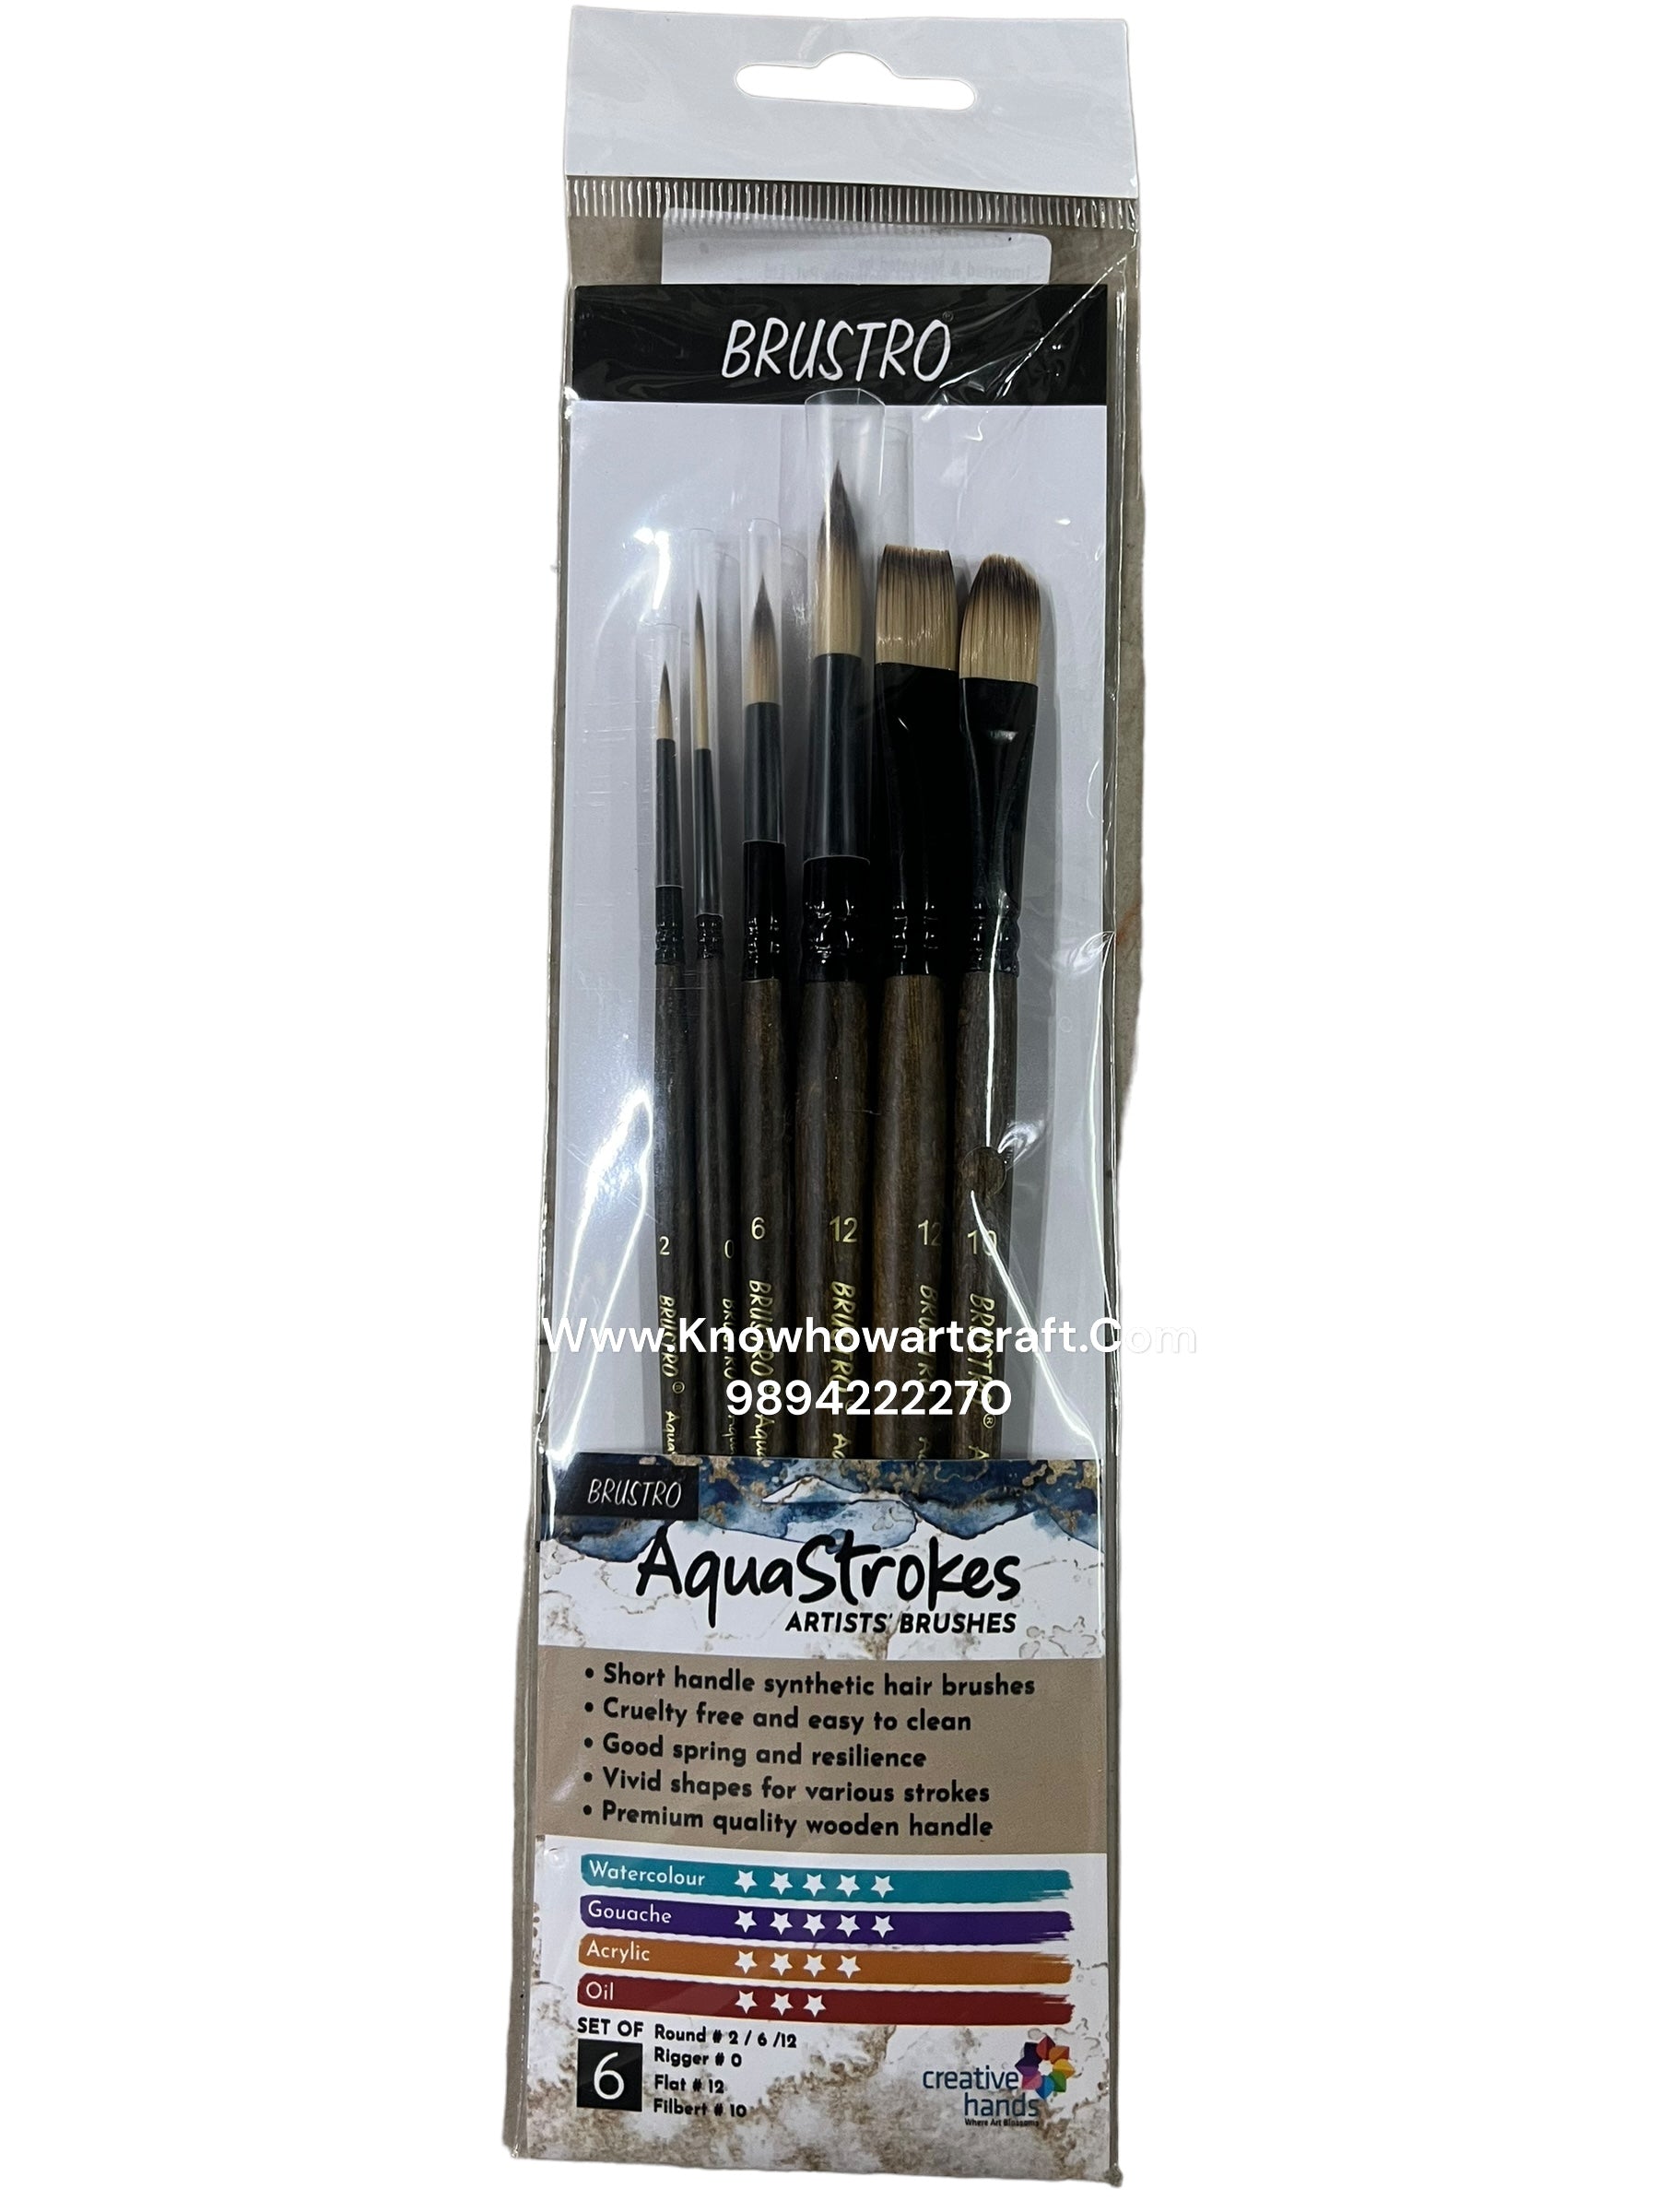 Brustro Aquastrokes Artists Brushes set of 6